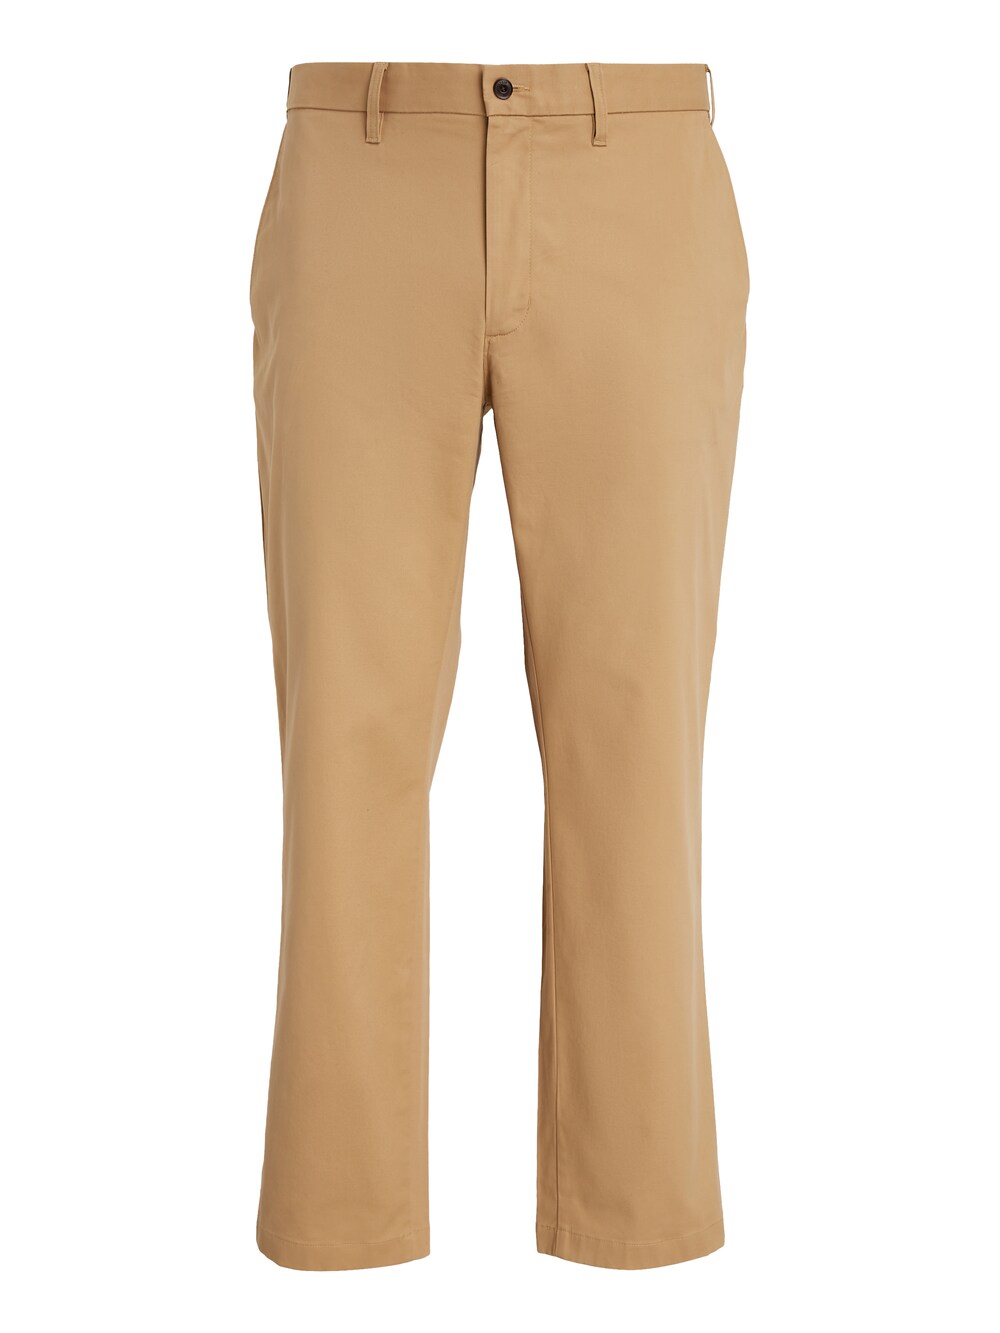 Обычные брюки чинос Tommy Hilfiger Big & Tall Madison, светло-коричневый